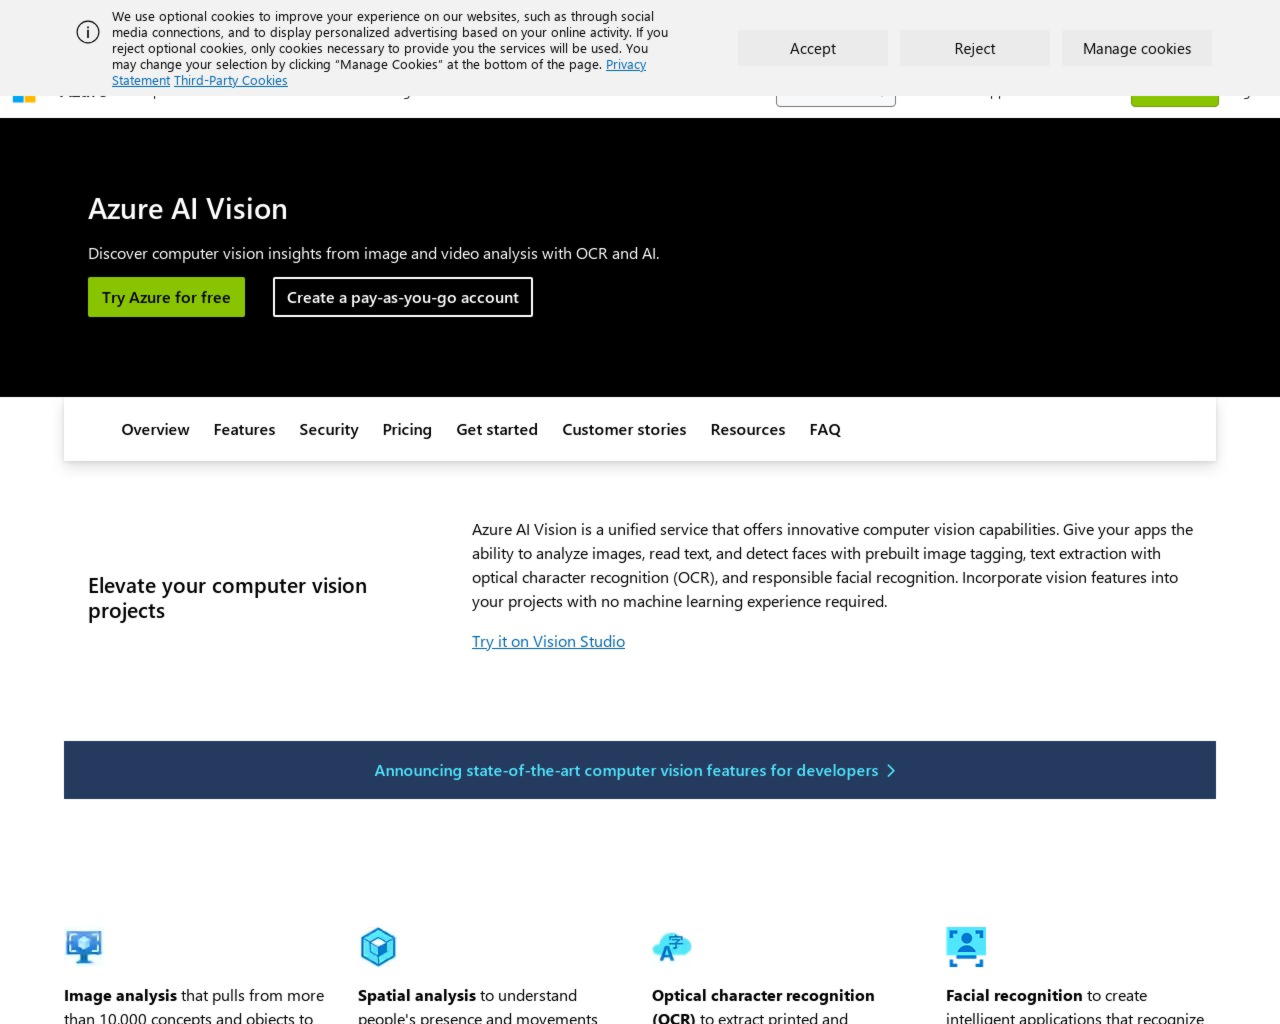 Изображение скриншота сайта - Azure AI Vision — это унифицированная служба, предлагающая инновационные возможности компьютерного зрения.